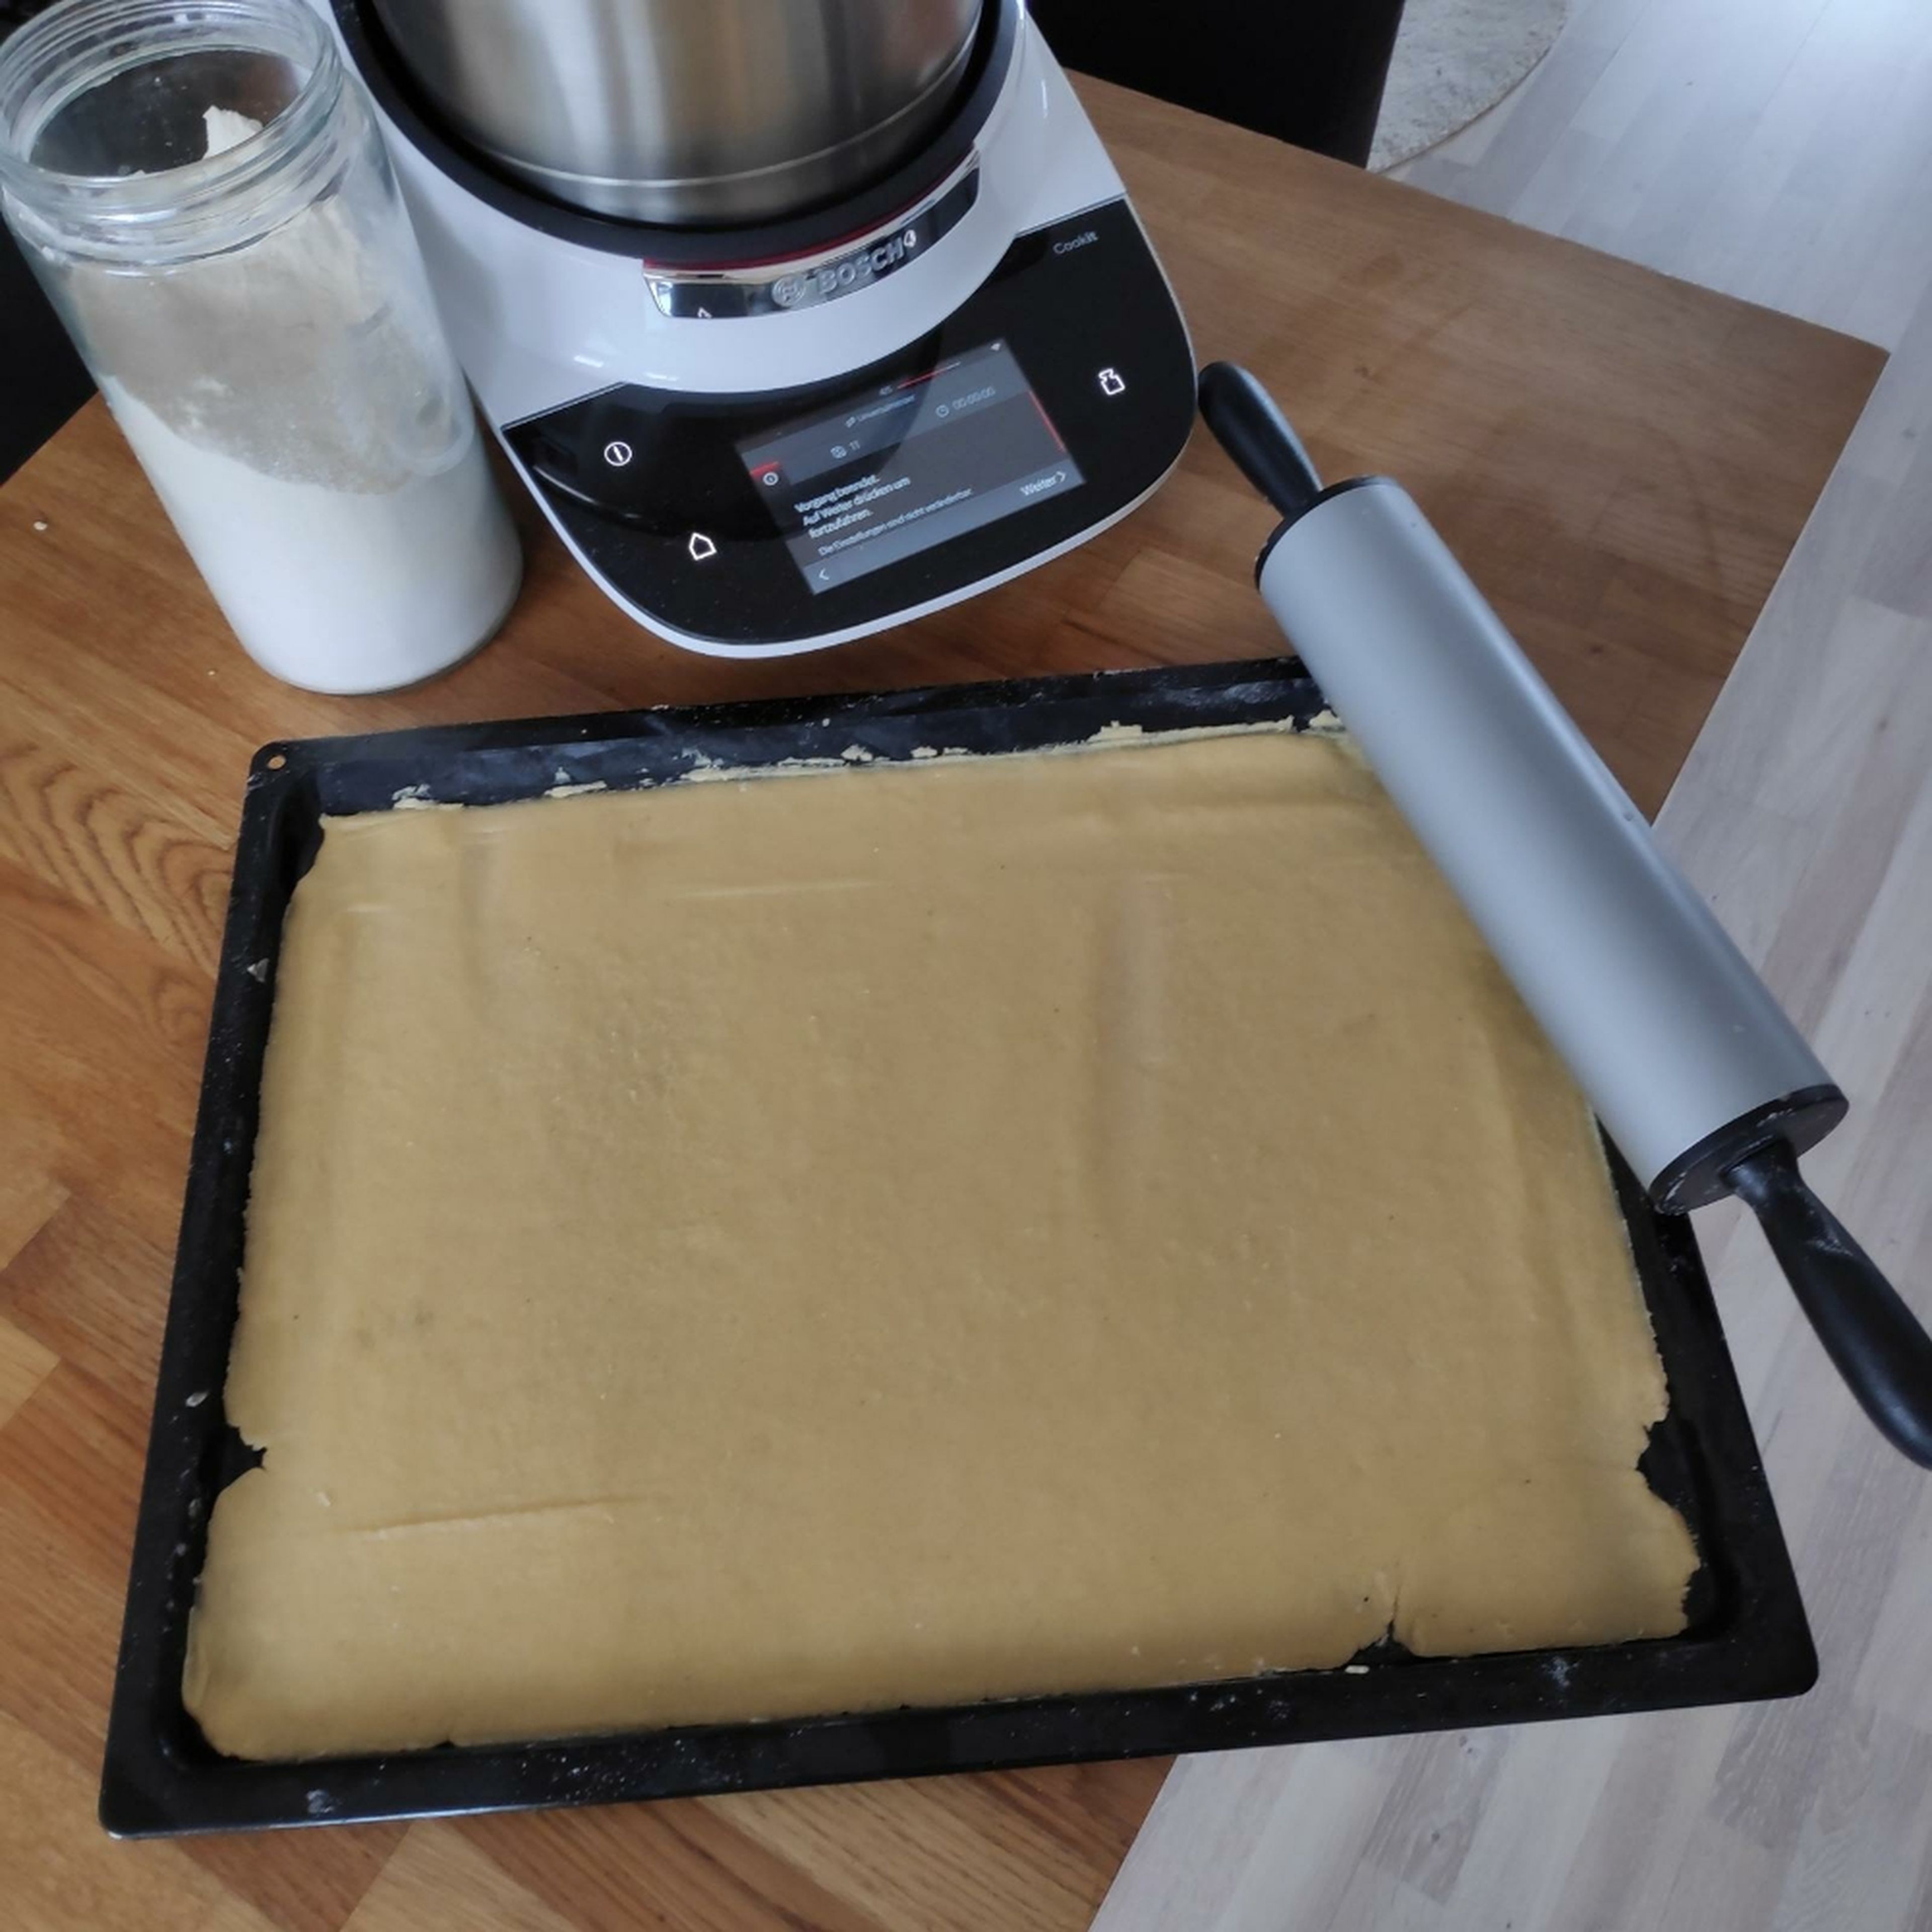 Den Teig aus dem Cookit nehmen und auf einem Backblech ausrollen. Anschließend im vorgeheizten Ofen bei 180°C für ca. 10 Minuten vorbacken und danach leicht abkühlen lassen. Universalmesser entnehmen und den Cookit grob reinigen.